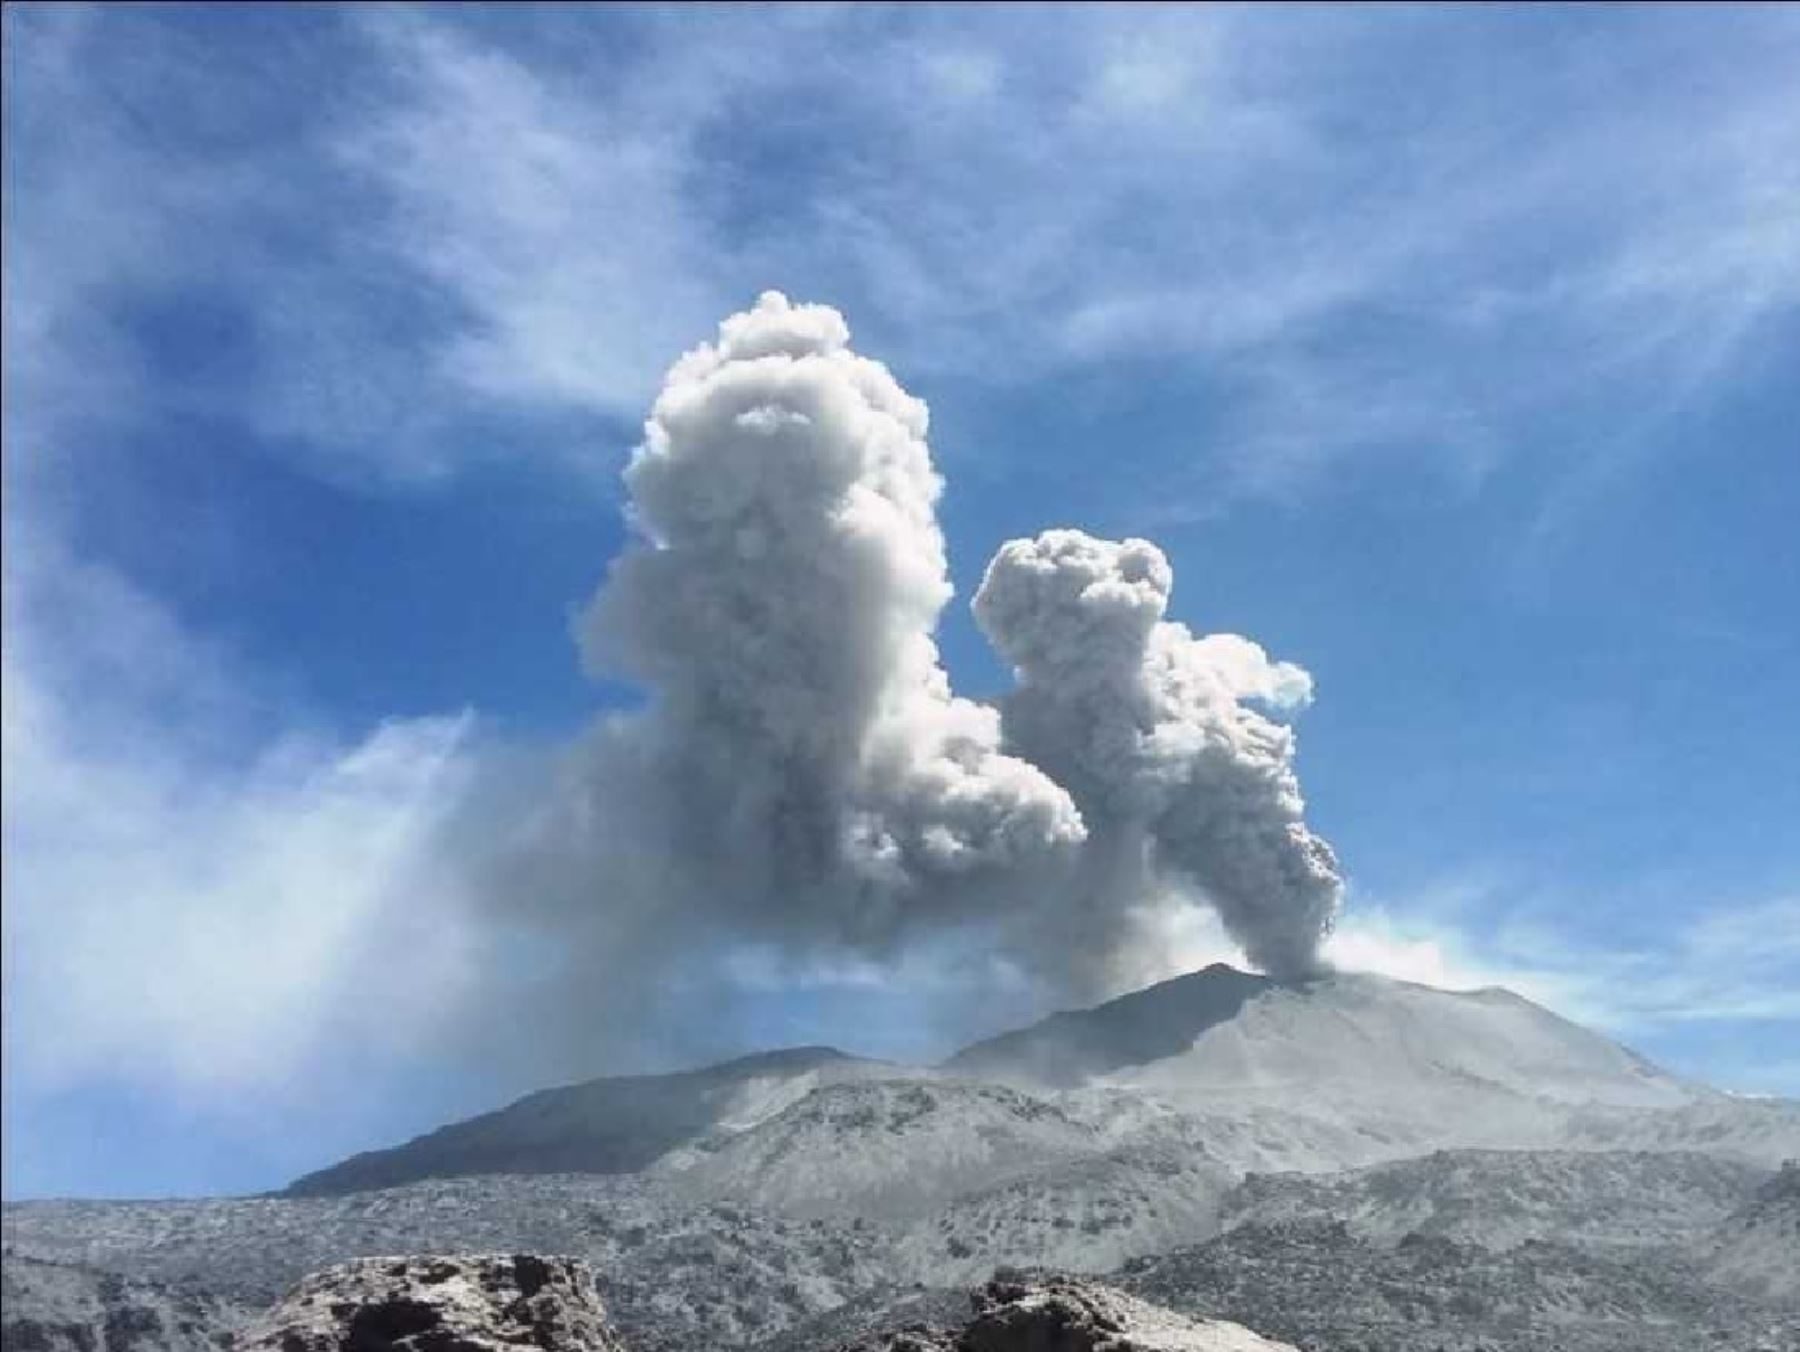 El Instituto Geofísico del Perú (IGPP) alertó la caída de cenizas en el volcán Sabancaya, ubicado en la región Arequipa, condición que se mantendría durante todo el día.